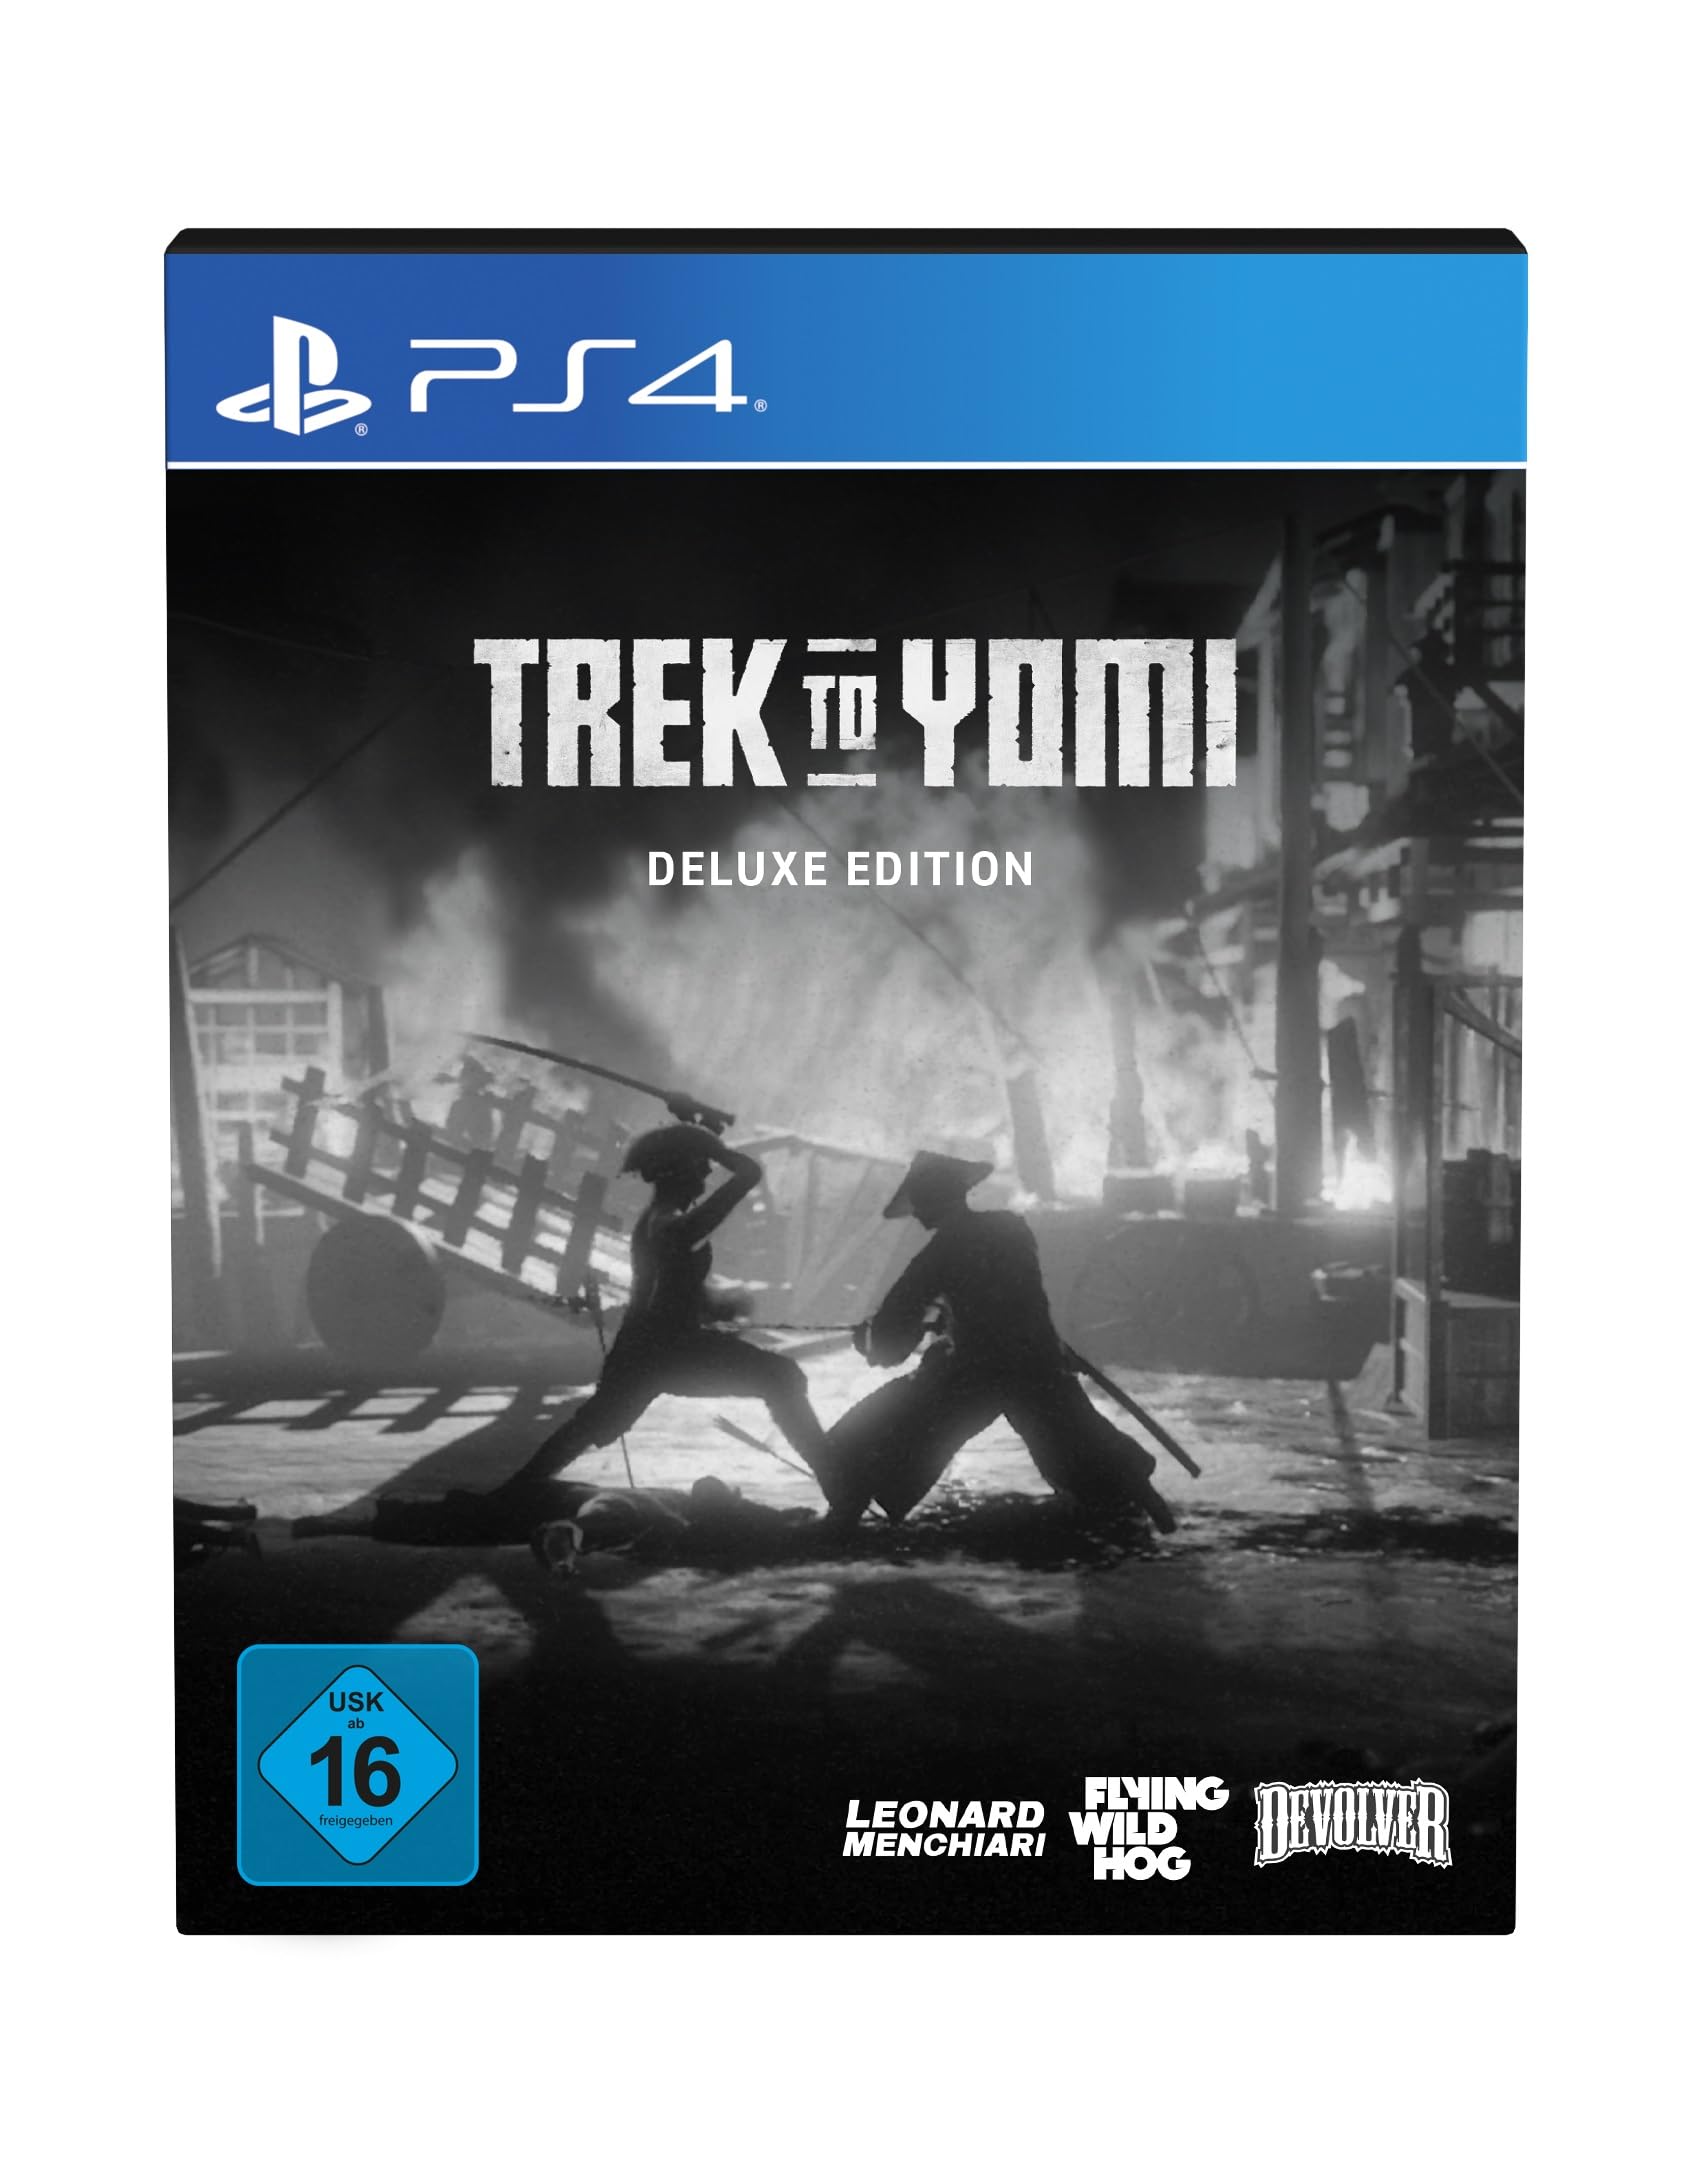 Magnifique Trek To Yomi: Deluxe Edition – PS4 v9MQXZYde mode